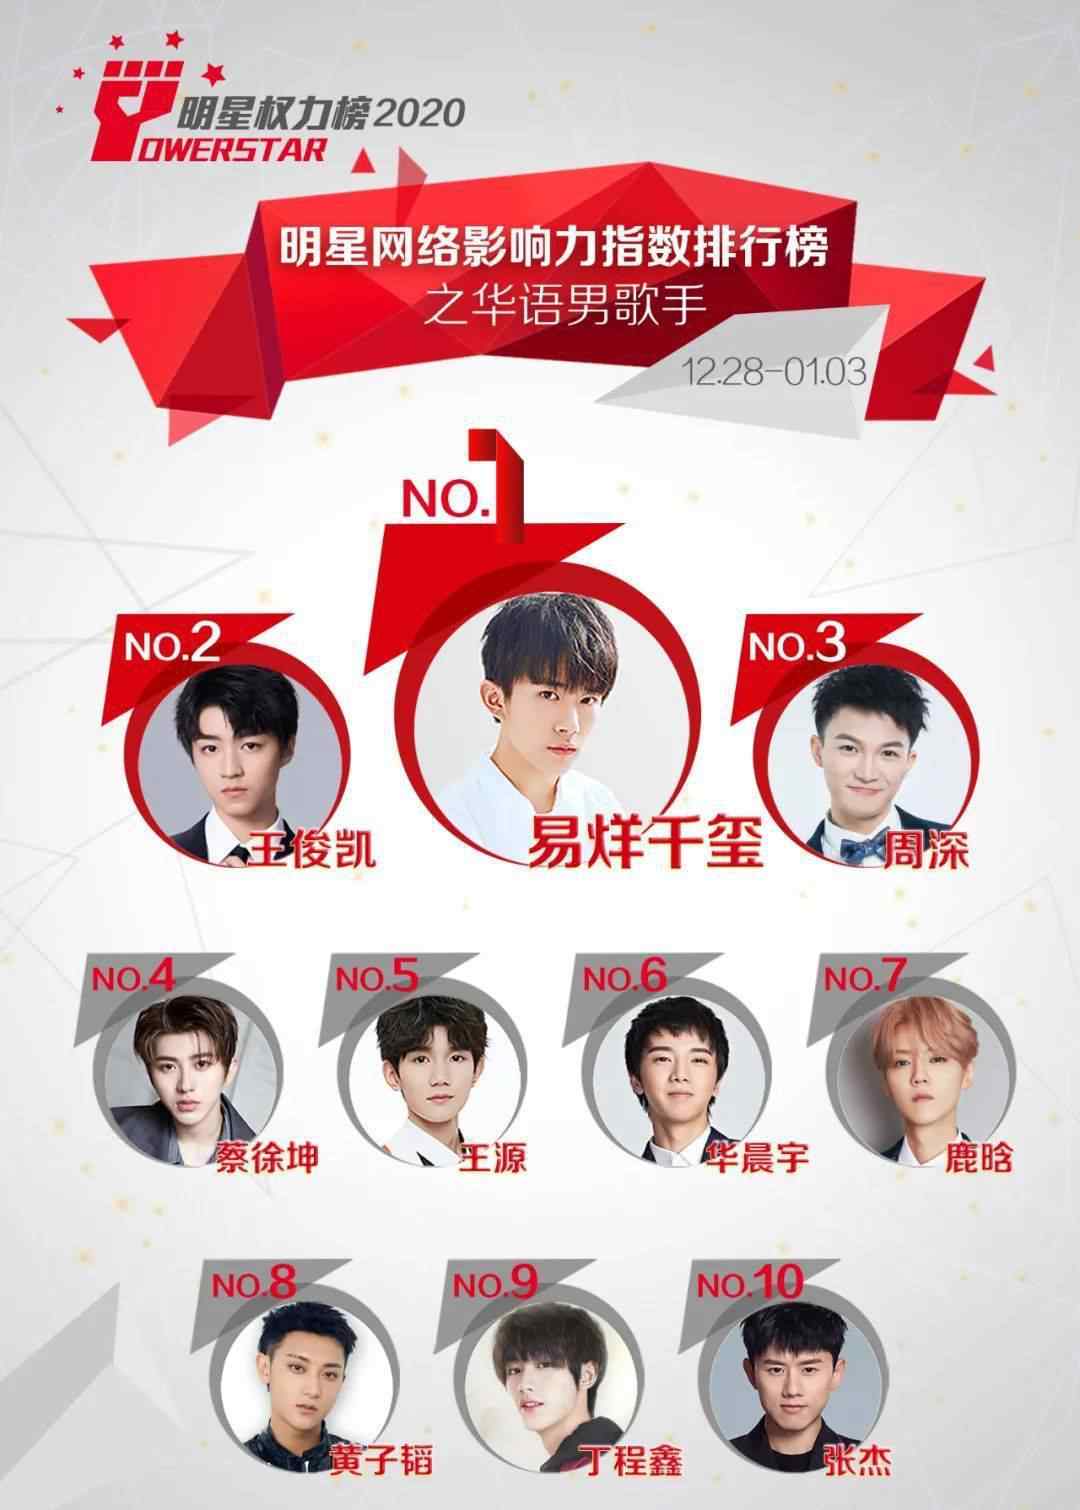 华语男歌手排行榜 明星网络影响力指数排行榜第276期榜单之华语男歌手Top10